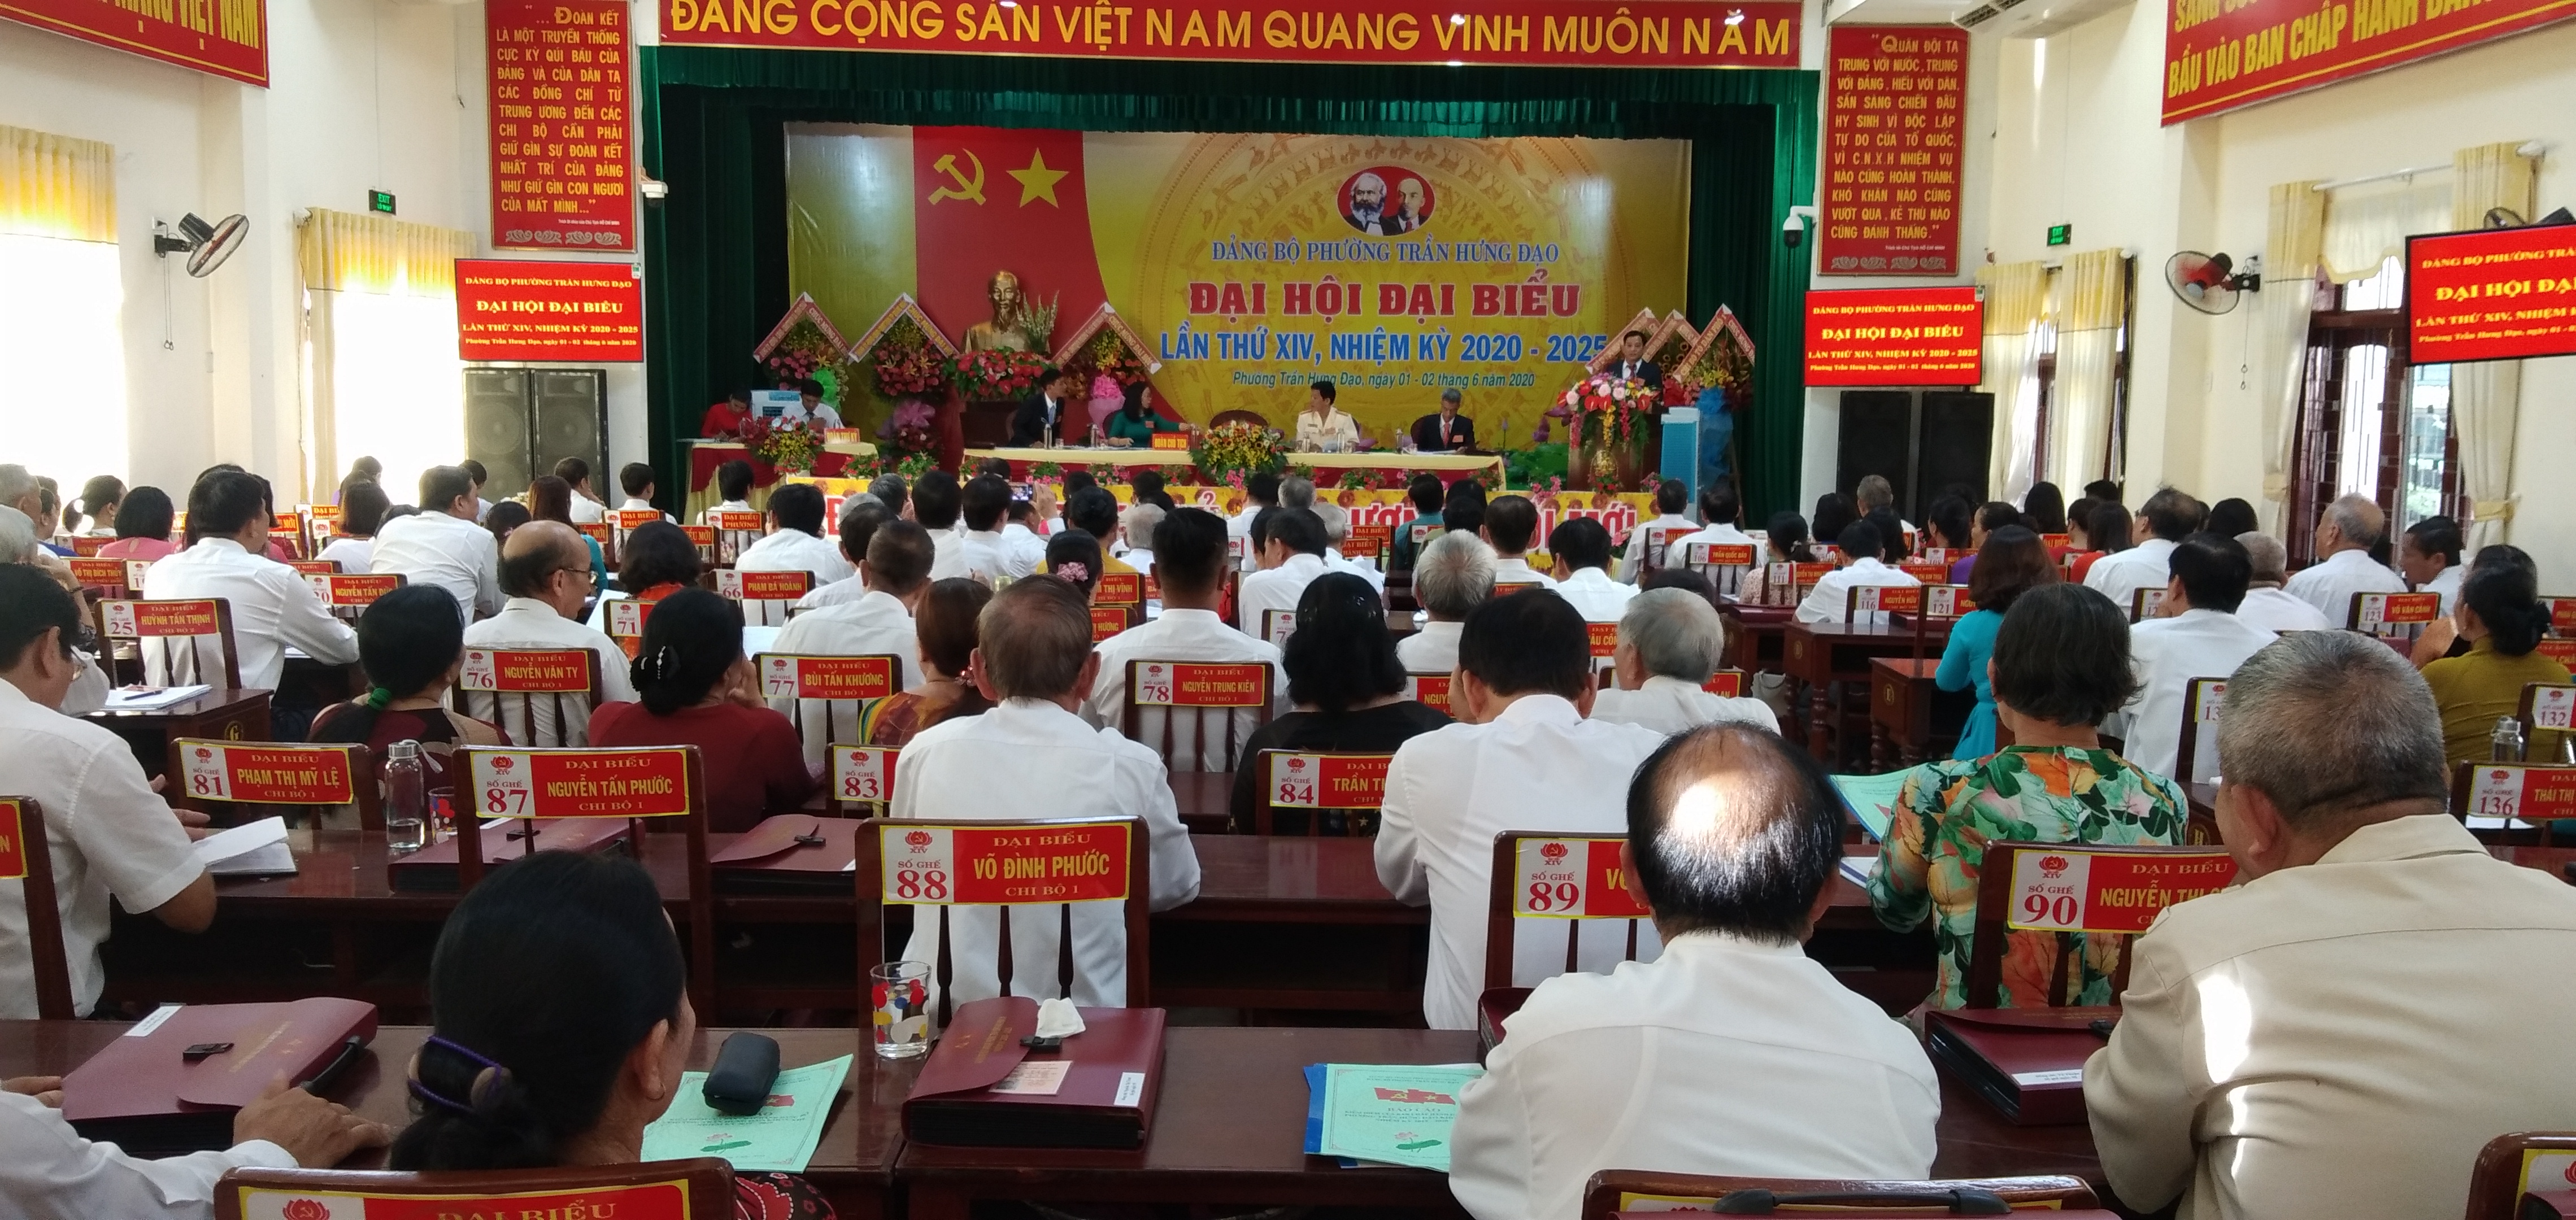 Đại hội Đảng bộ phường Trần Hưng Đạo lần thứ XIV, nhiệm kỳ 2020-2025